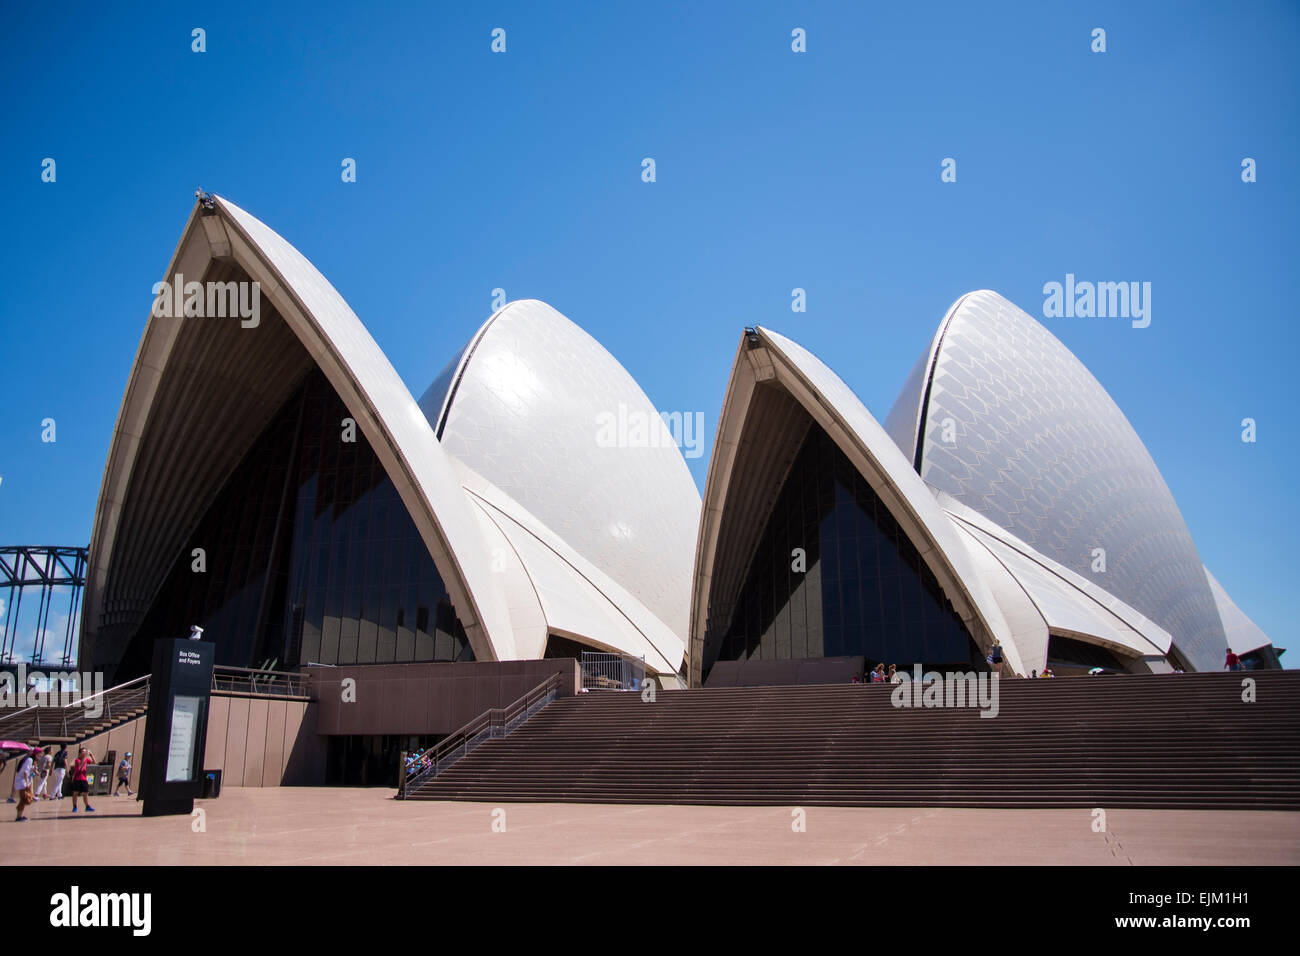 SYDNEY, Australia - 12 febbraio 2015: vista presso il Sydney Opera House di Sydney, Australia. È stato progettato da architetto danese Jorn Foto Stock